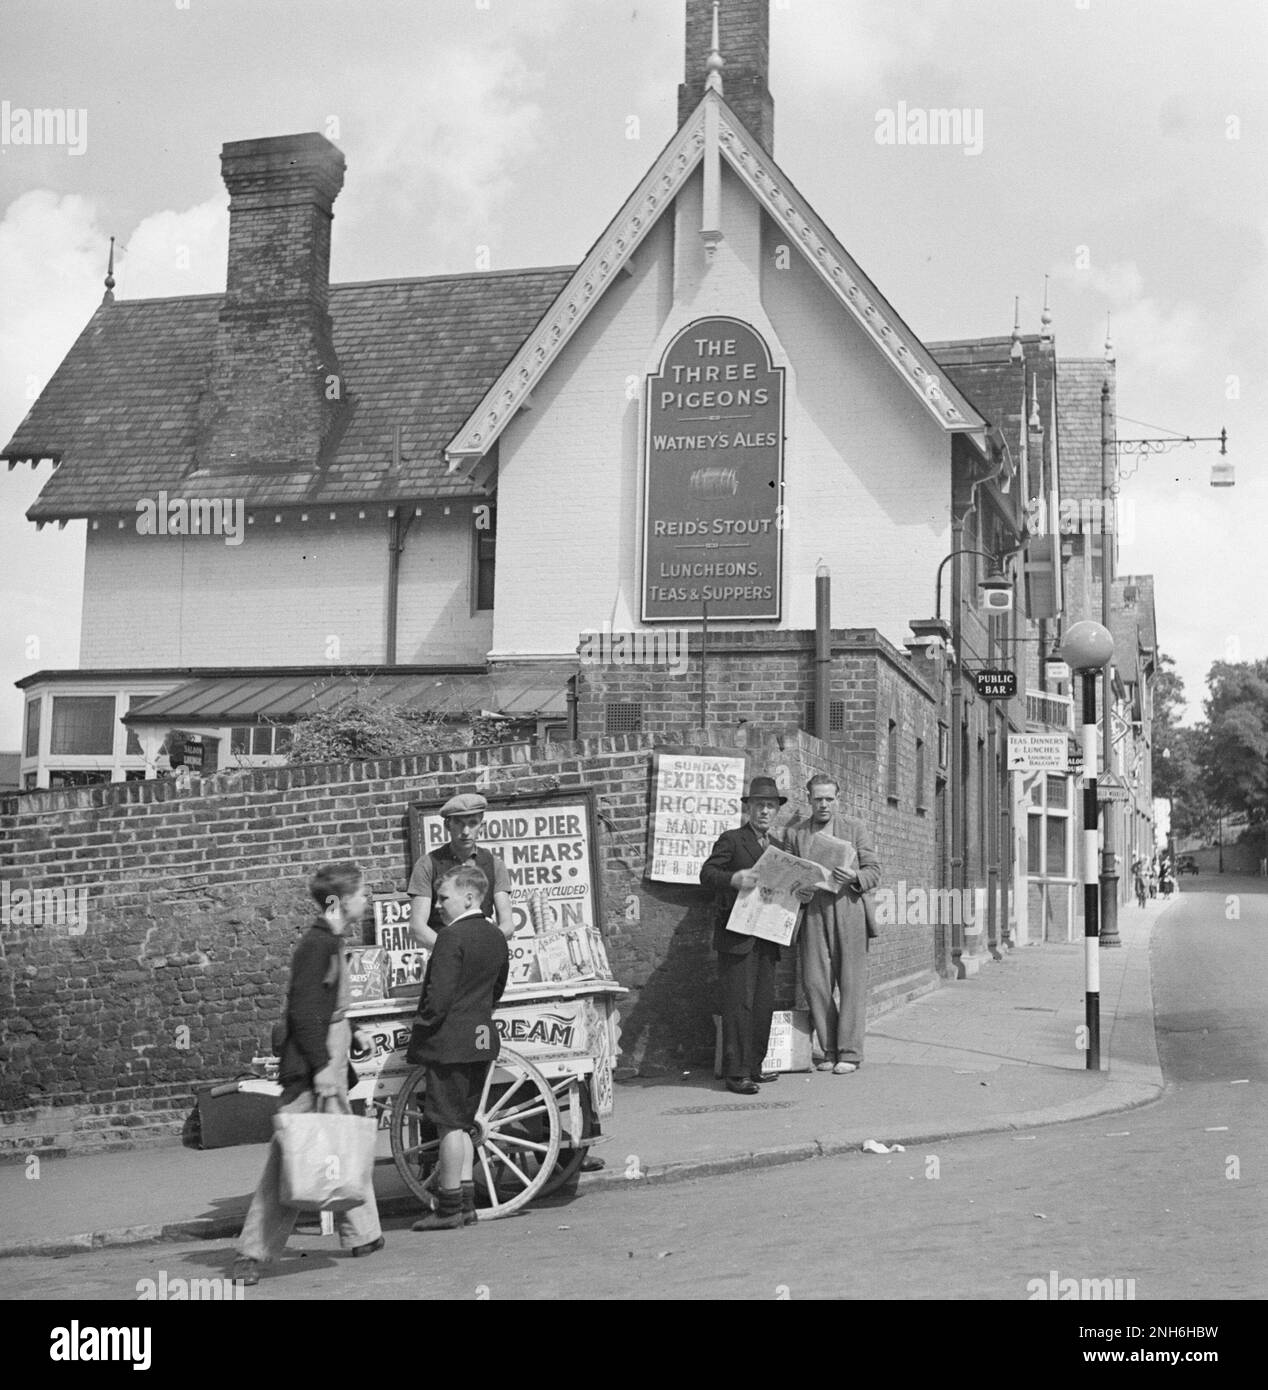 Willem van de Poll - Children at an Ice Cream Seller mit The There Pigeons Pub, Richmond, Surrey, England im Hintergrund - 1947 Stockfoto